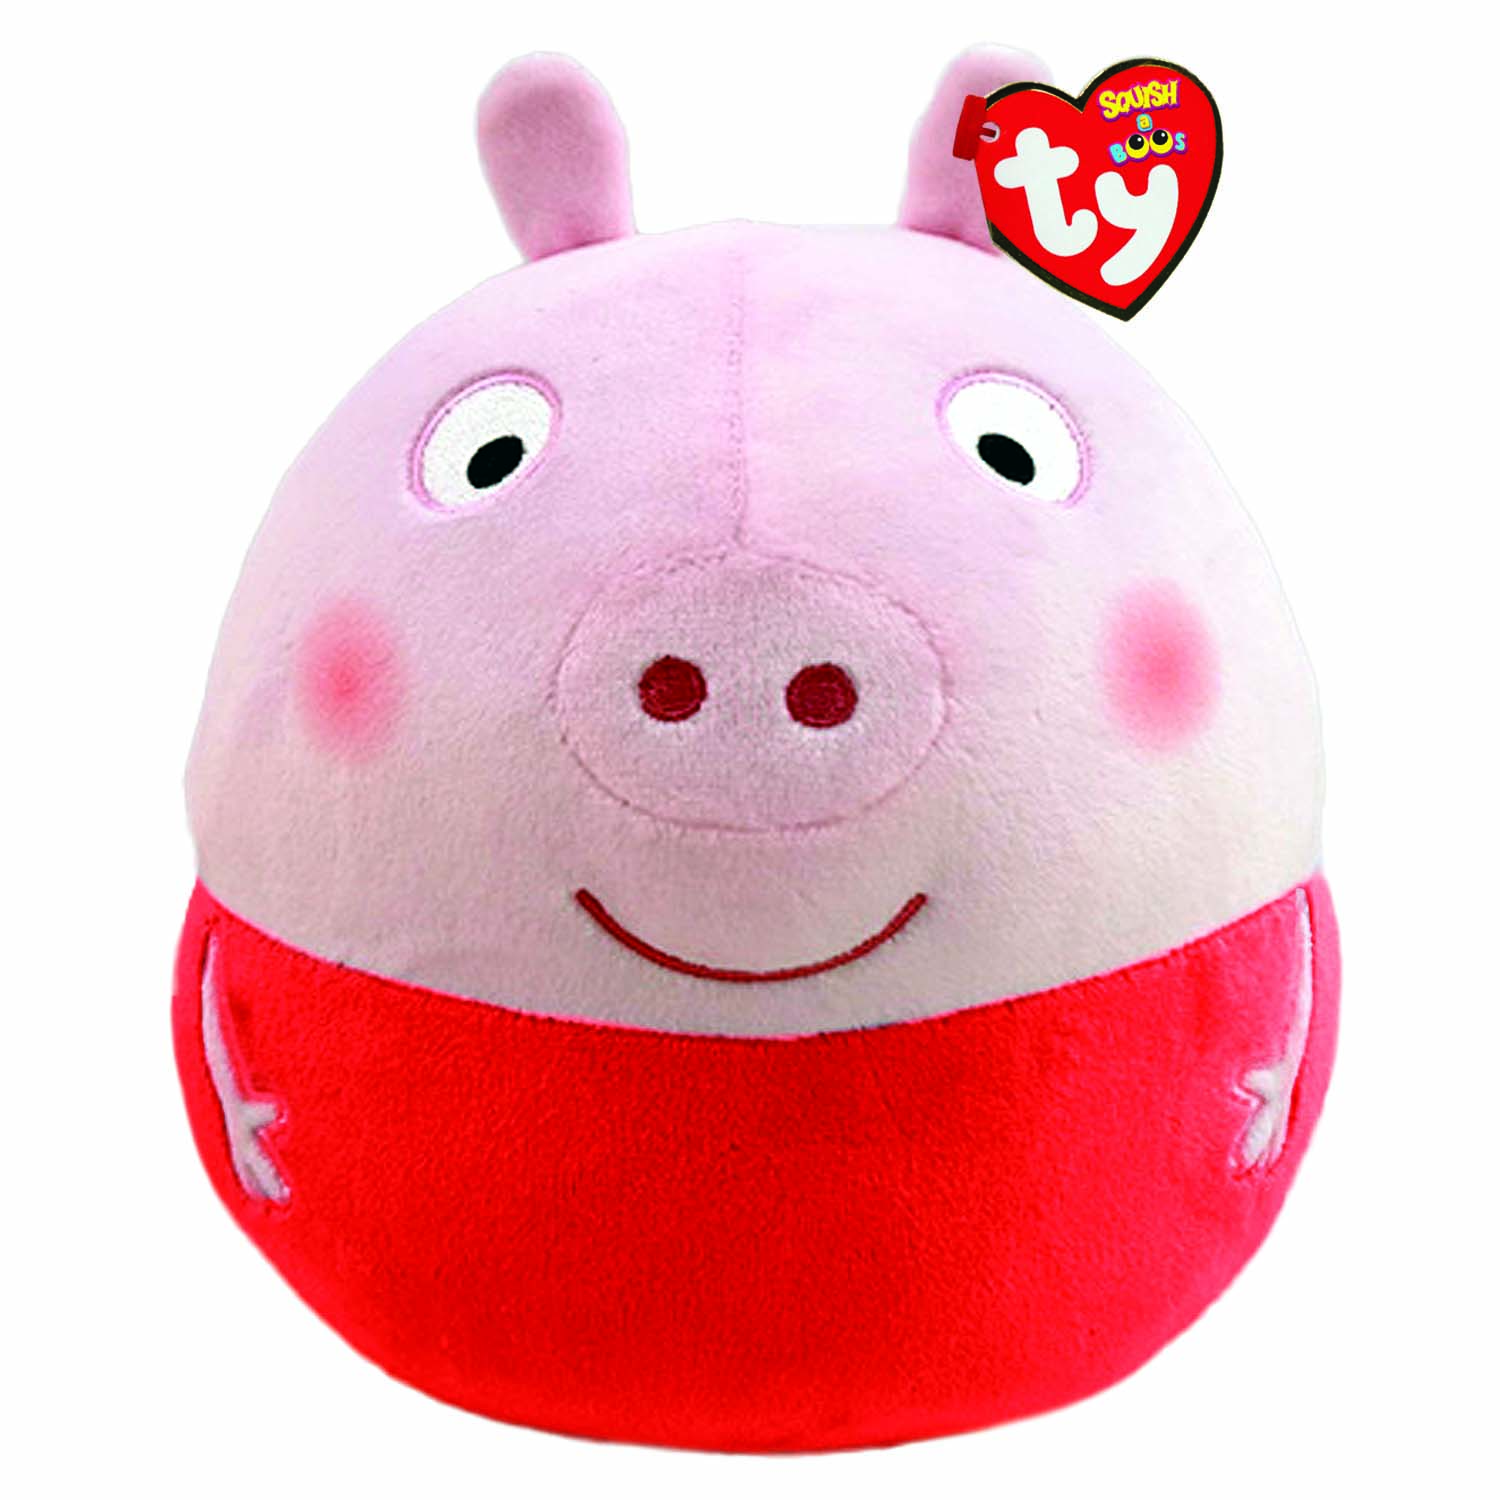 PEPPA PIG Peppa Pig Kissen Squish 35 Plüschtier Peppa, cm